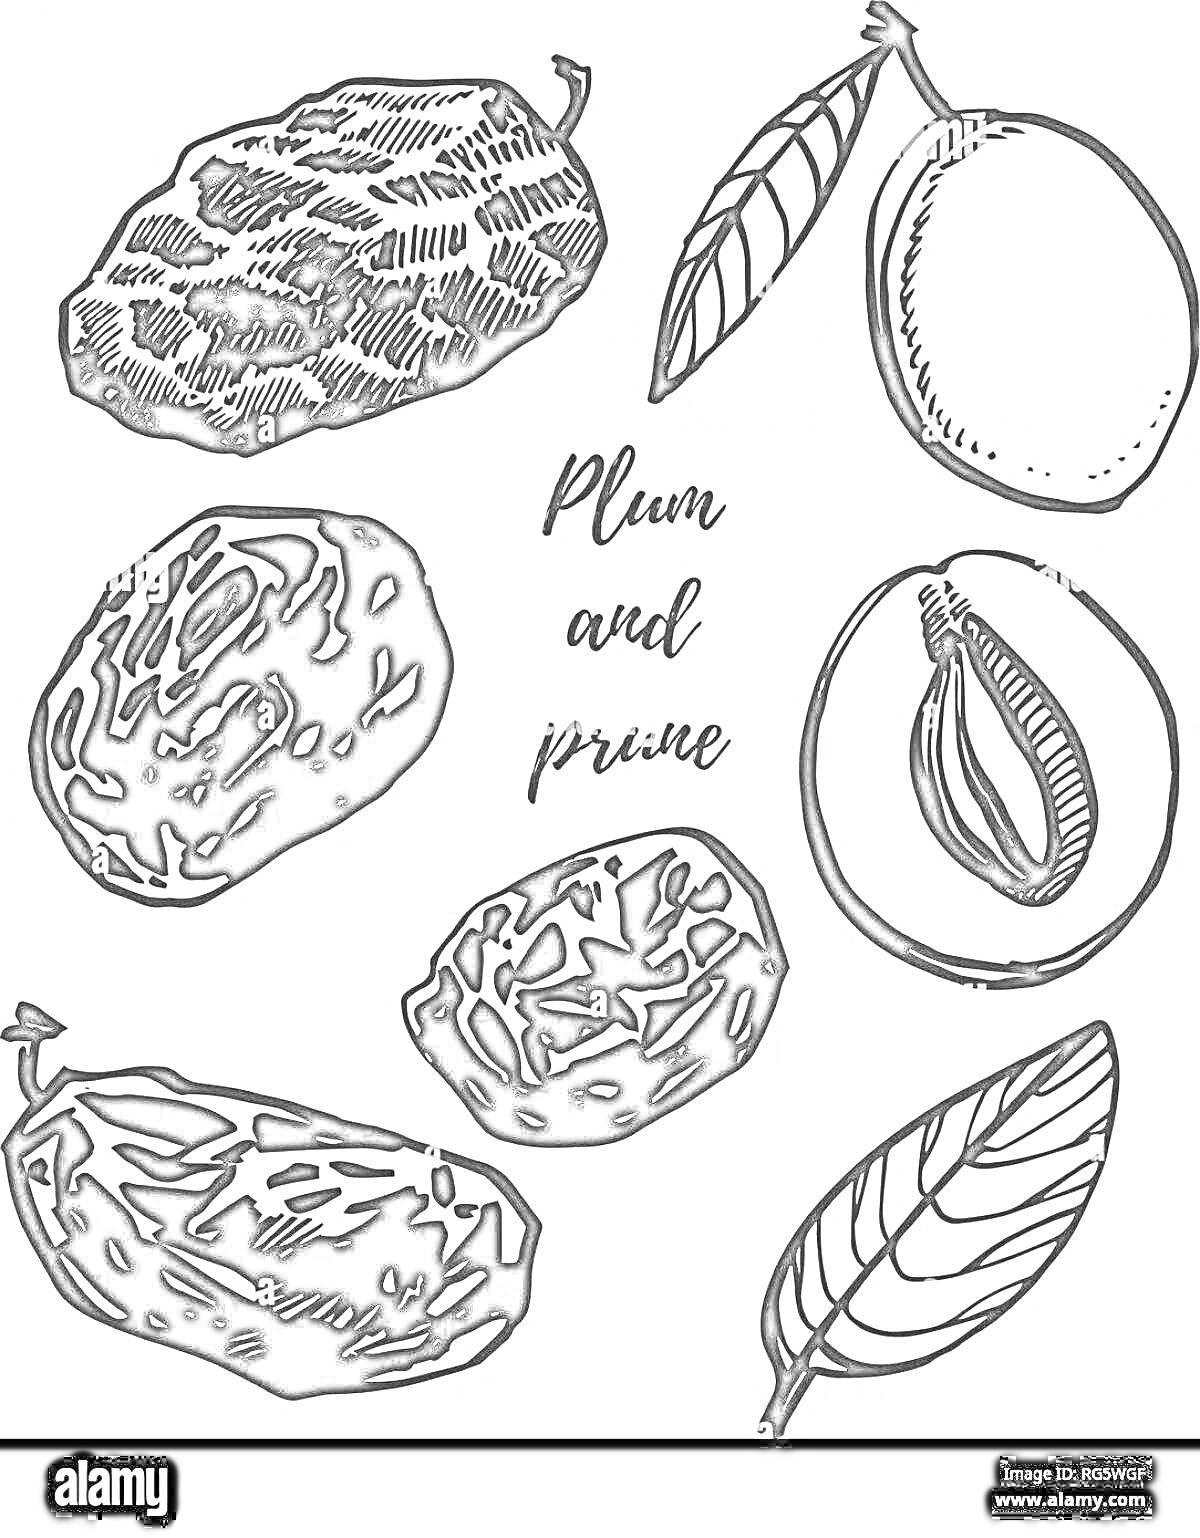 Раскраска Чёрно-белые рисунки финика и сливы, в том числе листья, целые плоды и разрезанные плоды с косточками внутри